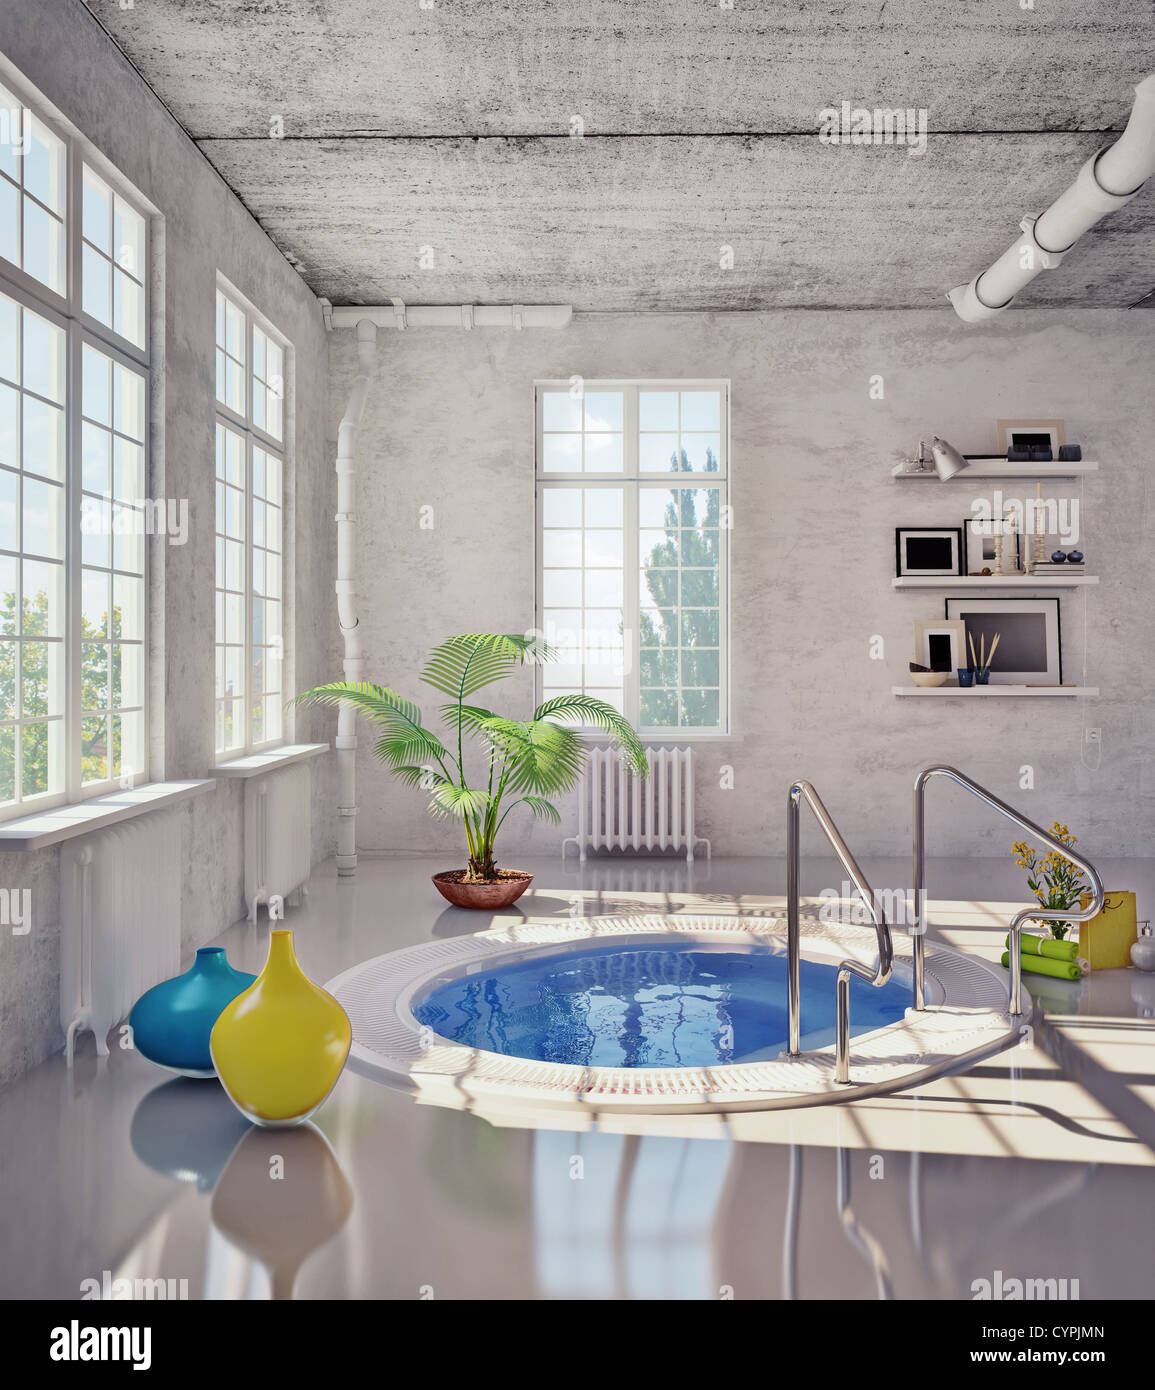 Salle de bains moderne à l'intérieur loft ( 3d illustration) Banque D'Images